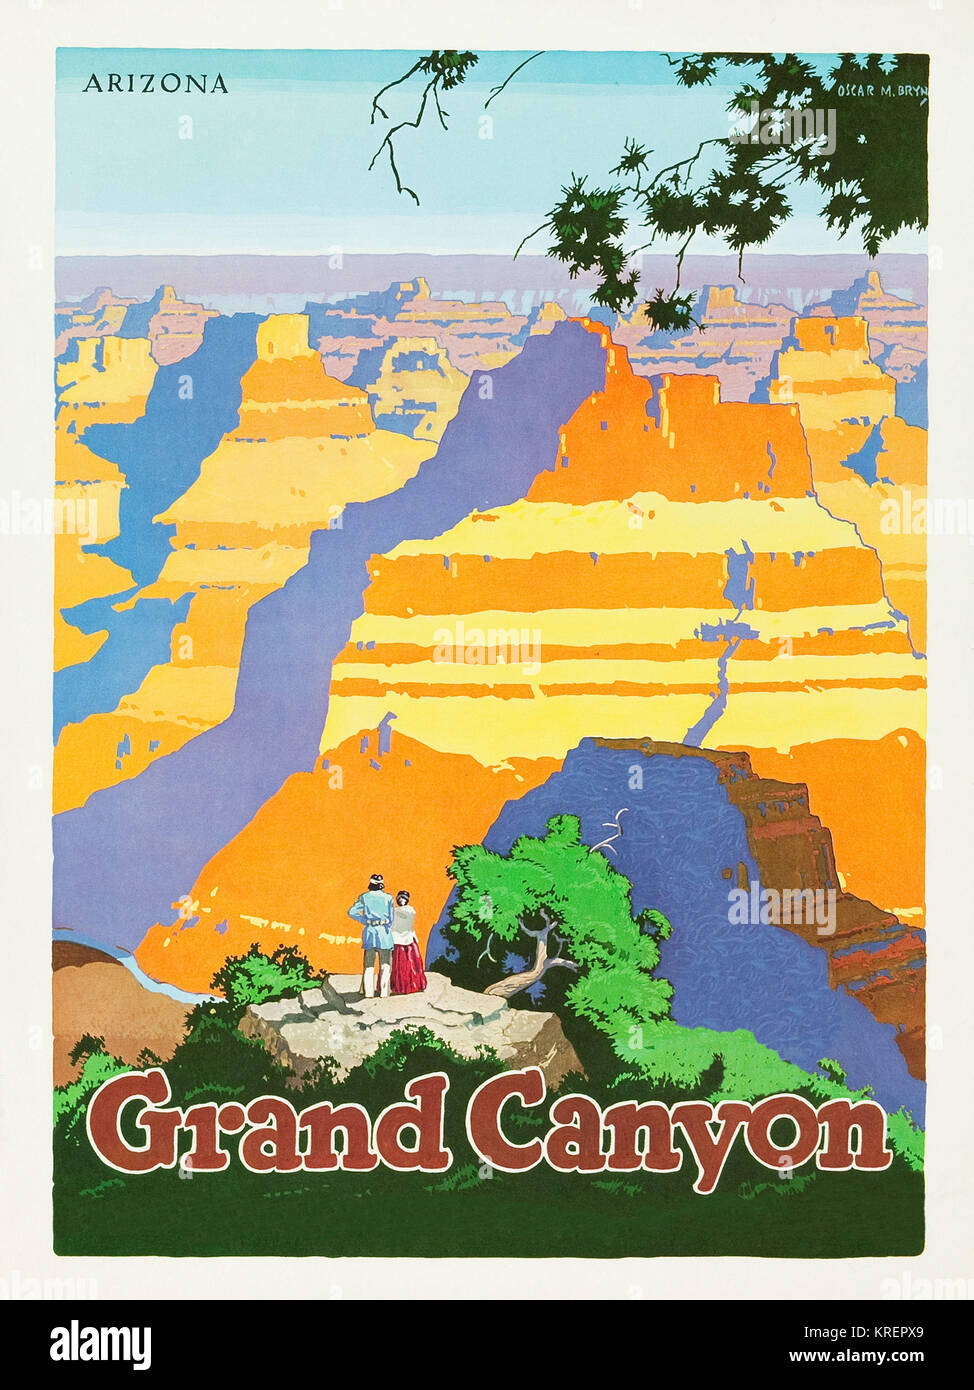 'Voyage affiche pour promouvoir à travers l'Amérique voyage par chemin de fer, publié dans les années 50. Montrant le Grand Canyon en Arizona. À l'origine peintre par Oscar M. Bryn (1883 - 1967).' Banque D'Images